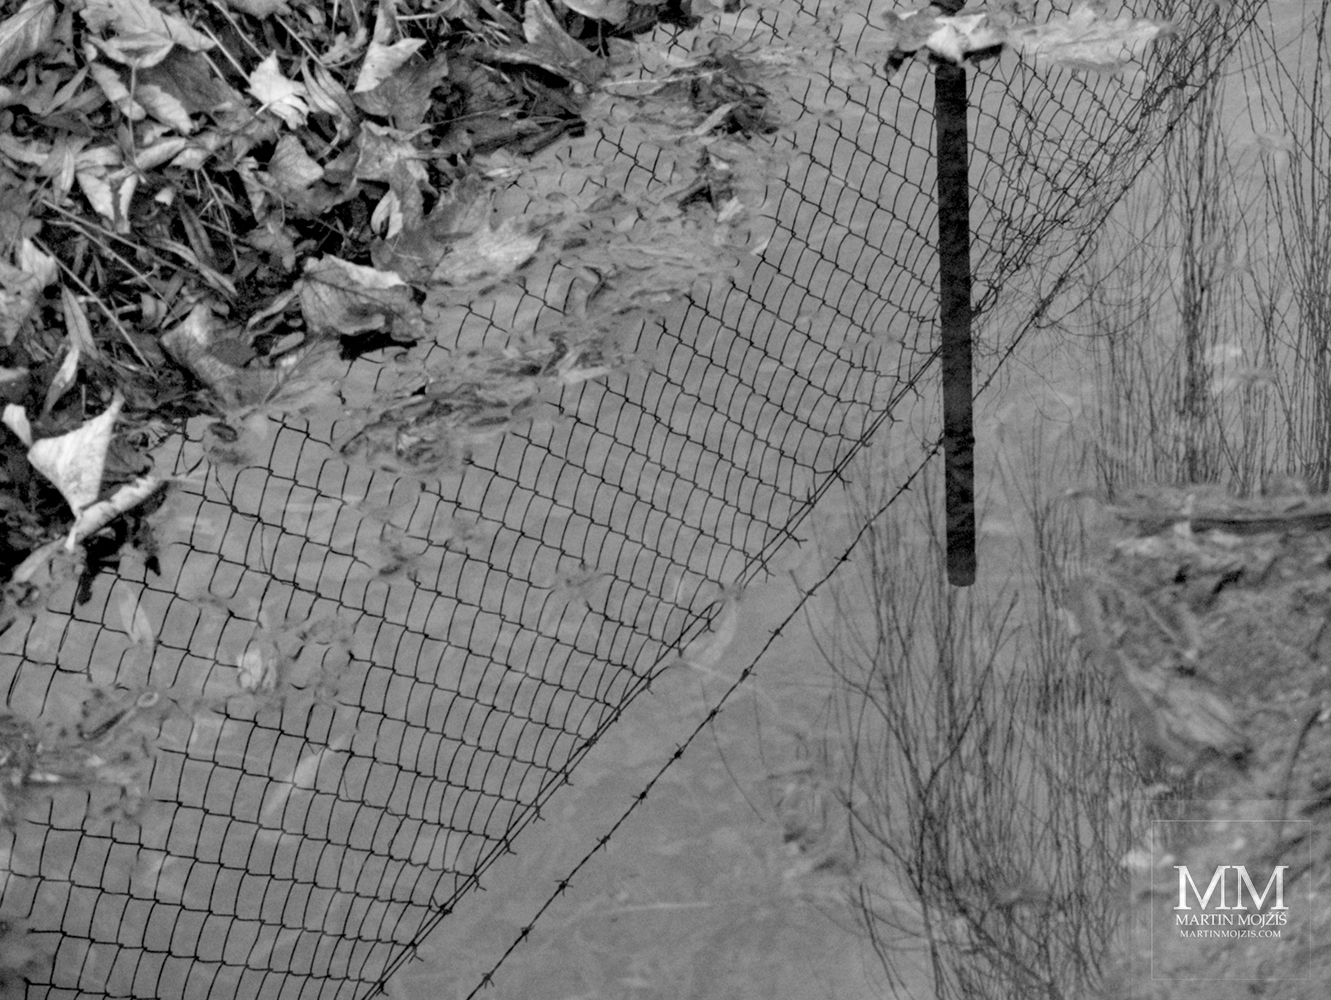 Odraz drátěného plotu na hladině kaluže. Fotografie s názvem V PLOTĚ II.